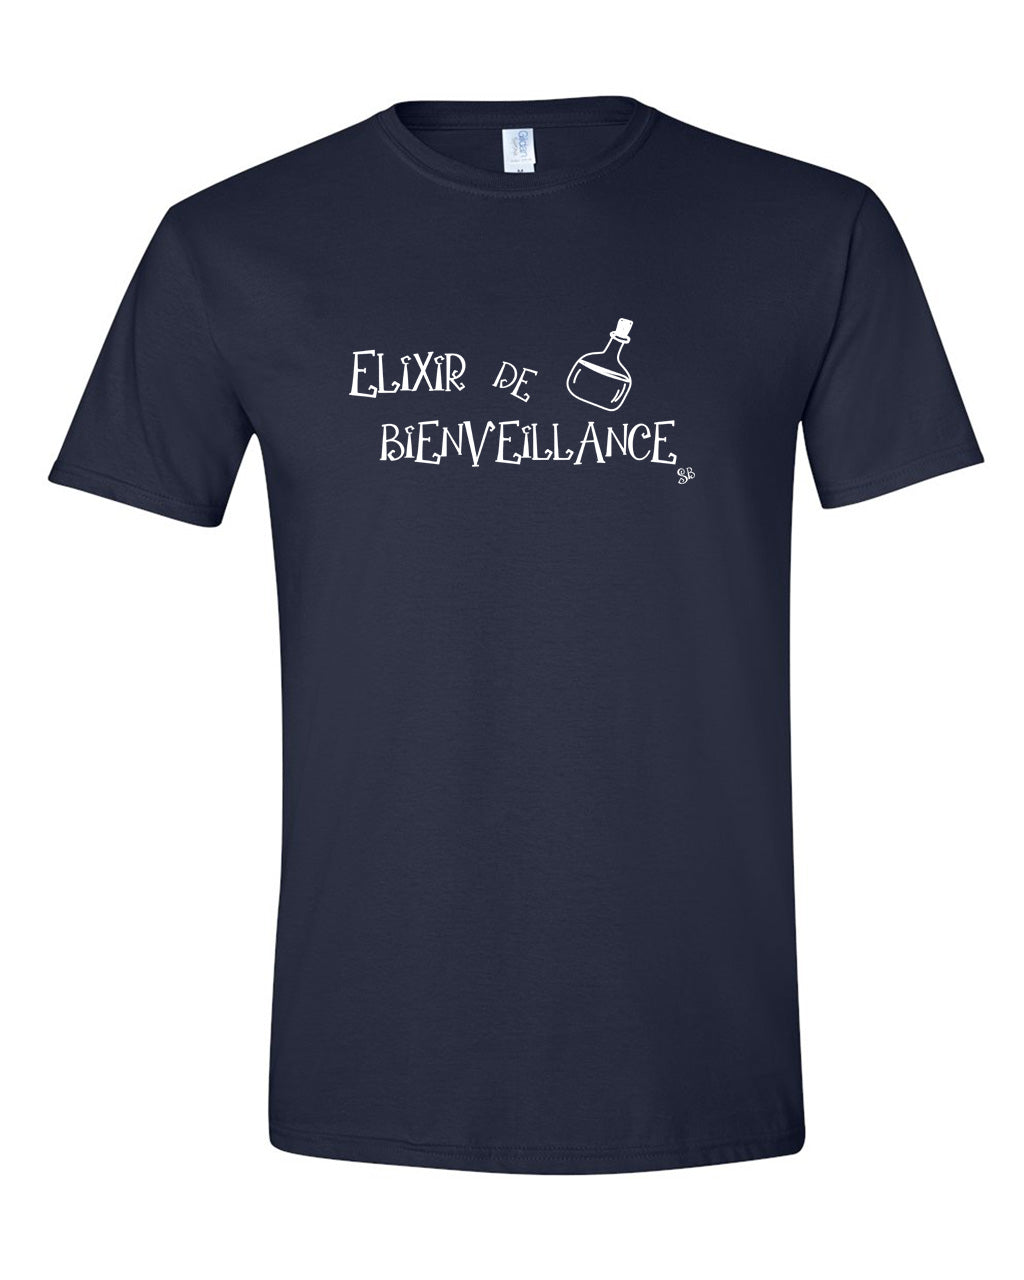 T-shirt - Elixir de bienveillance